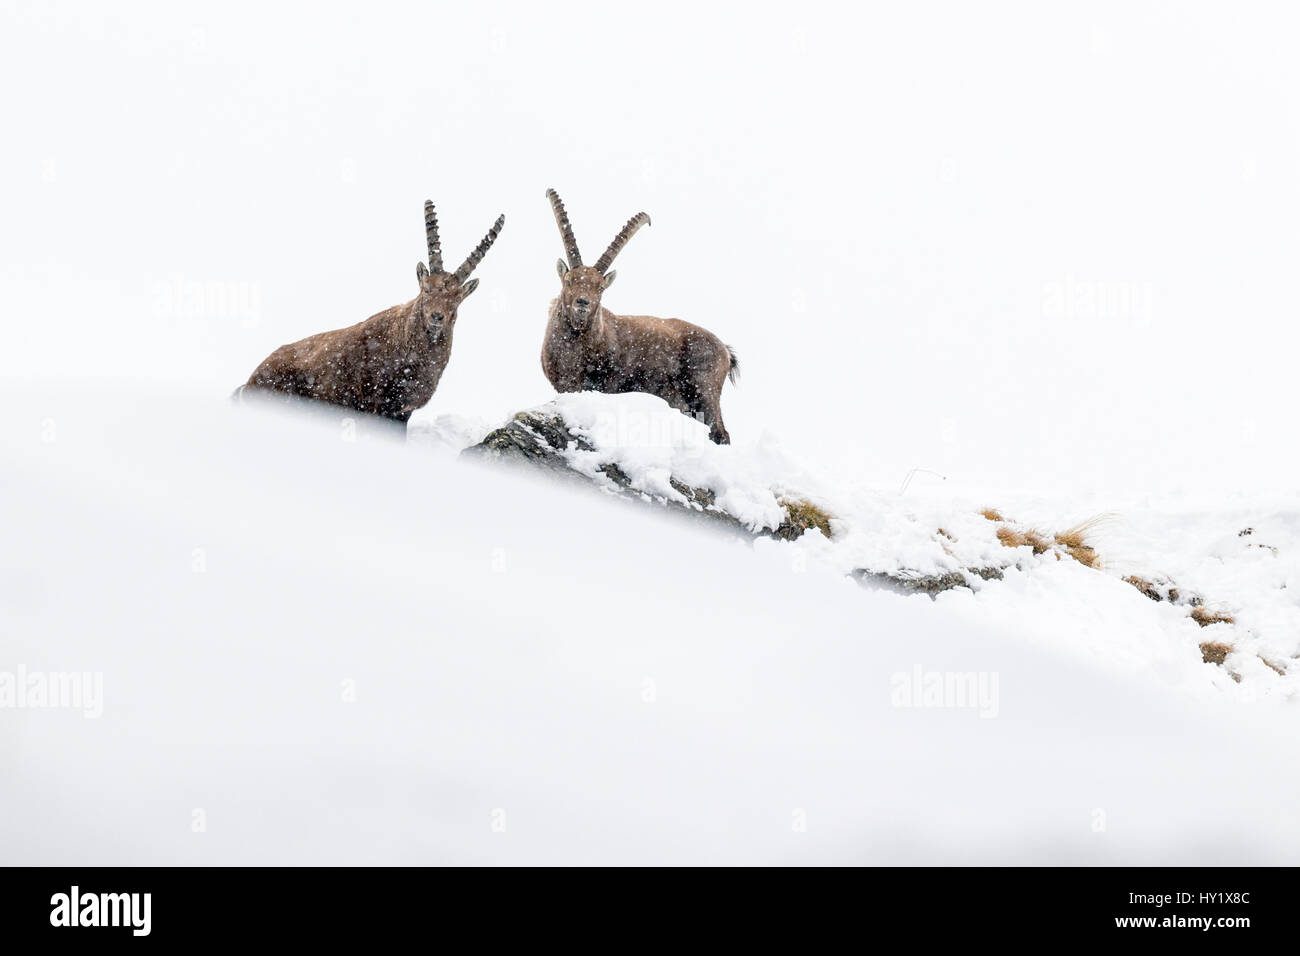 Alpensteinbock (Capra Ibex) zwei Erwachsene Männer im tiefen Schnee auf einem Bergrücken mit jungen bei Schneefall. Nationalpark Gran Paradiso, Alpen, Italien. Januar. Stockfoto